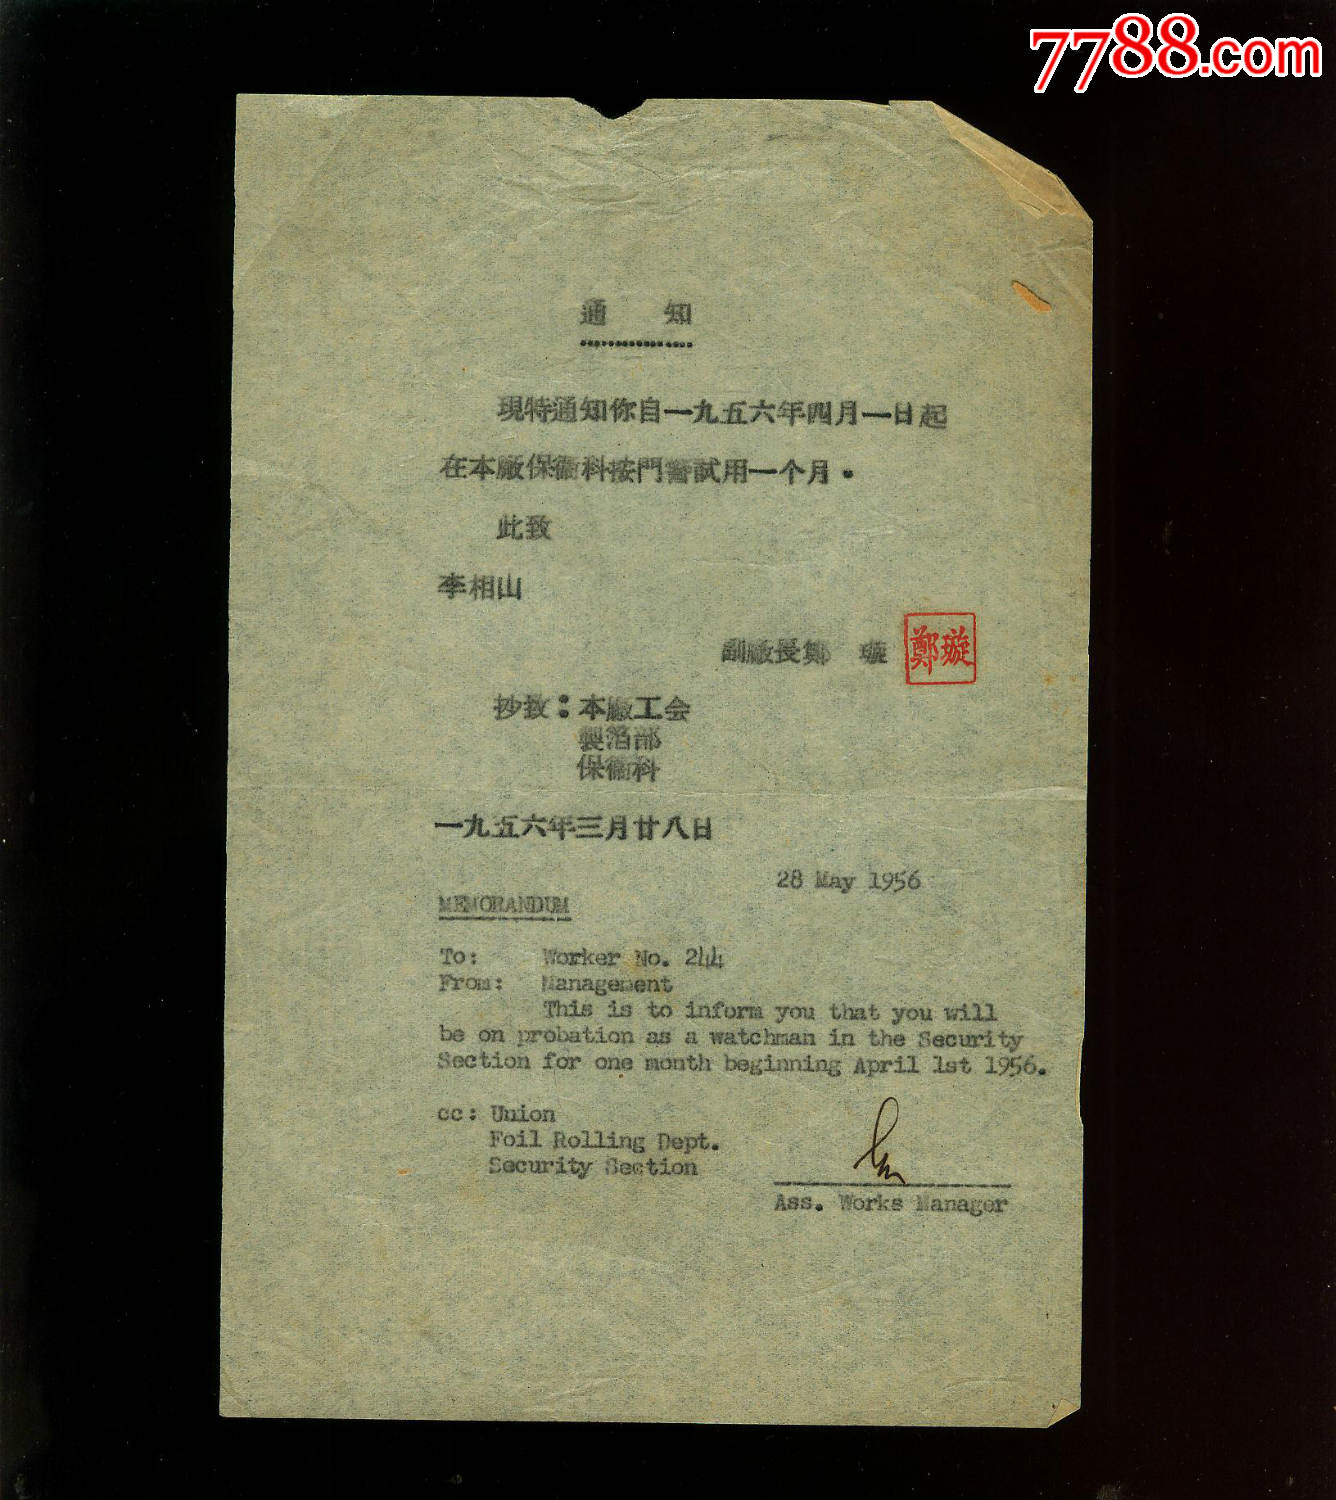 1956年华铝钢精厂关于职工保卫科试用中英文通知